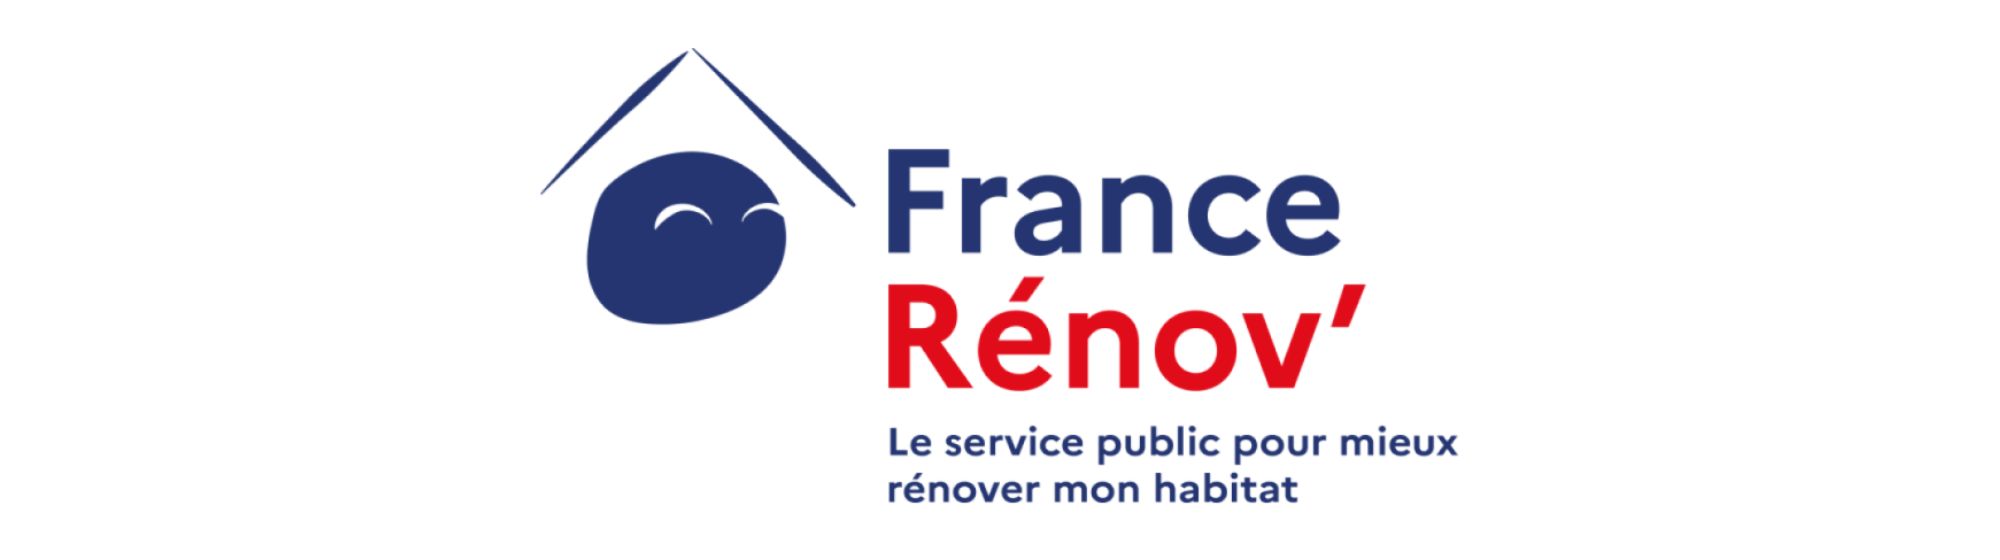 logo france renov